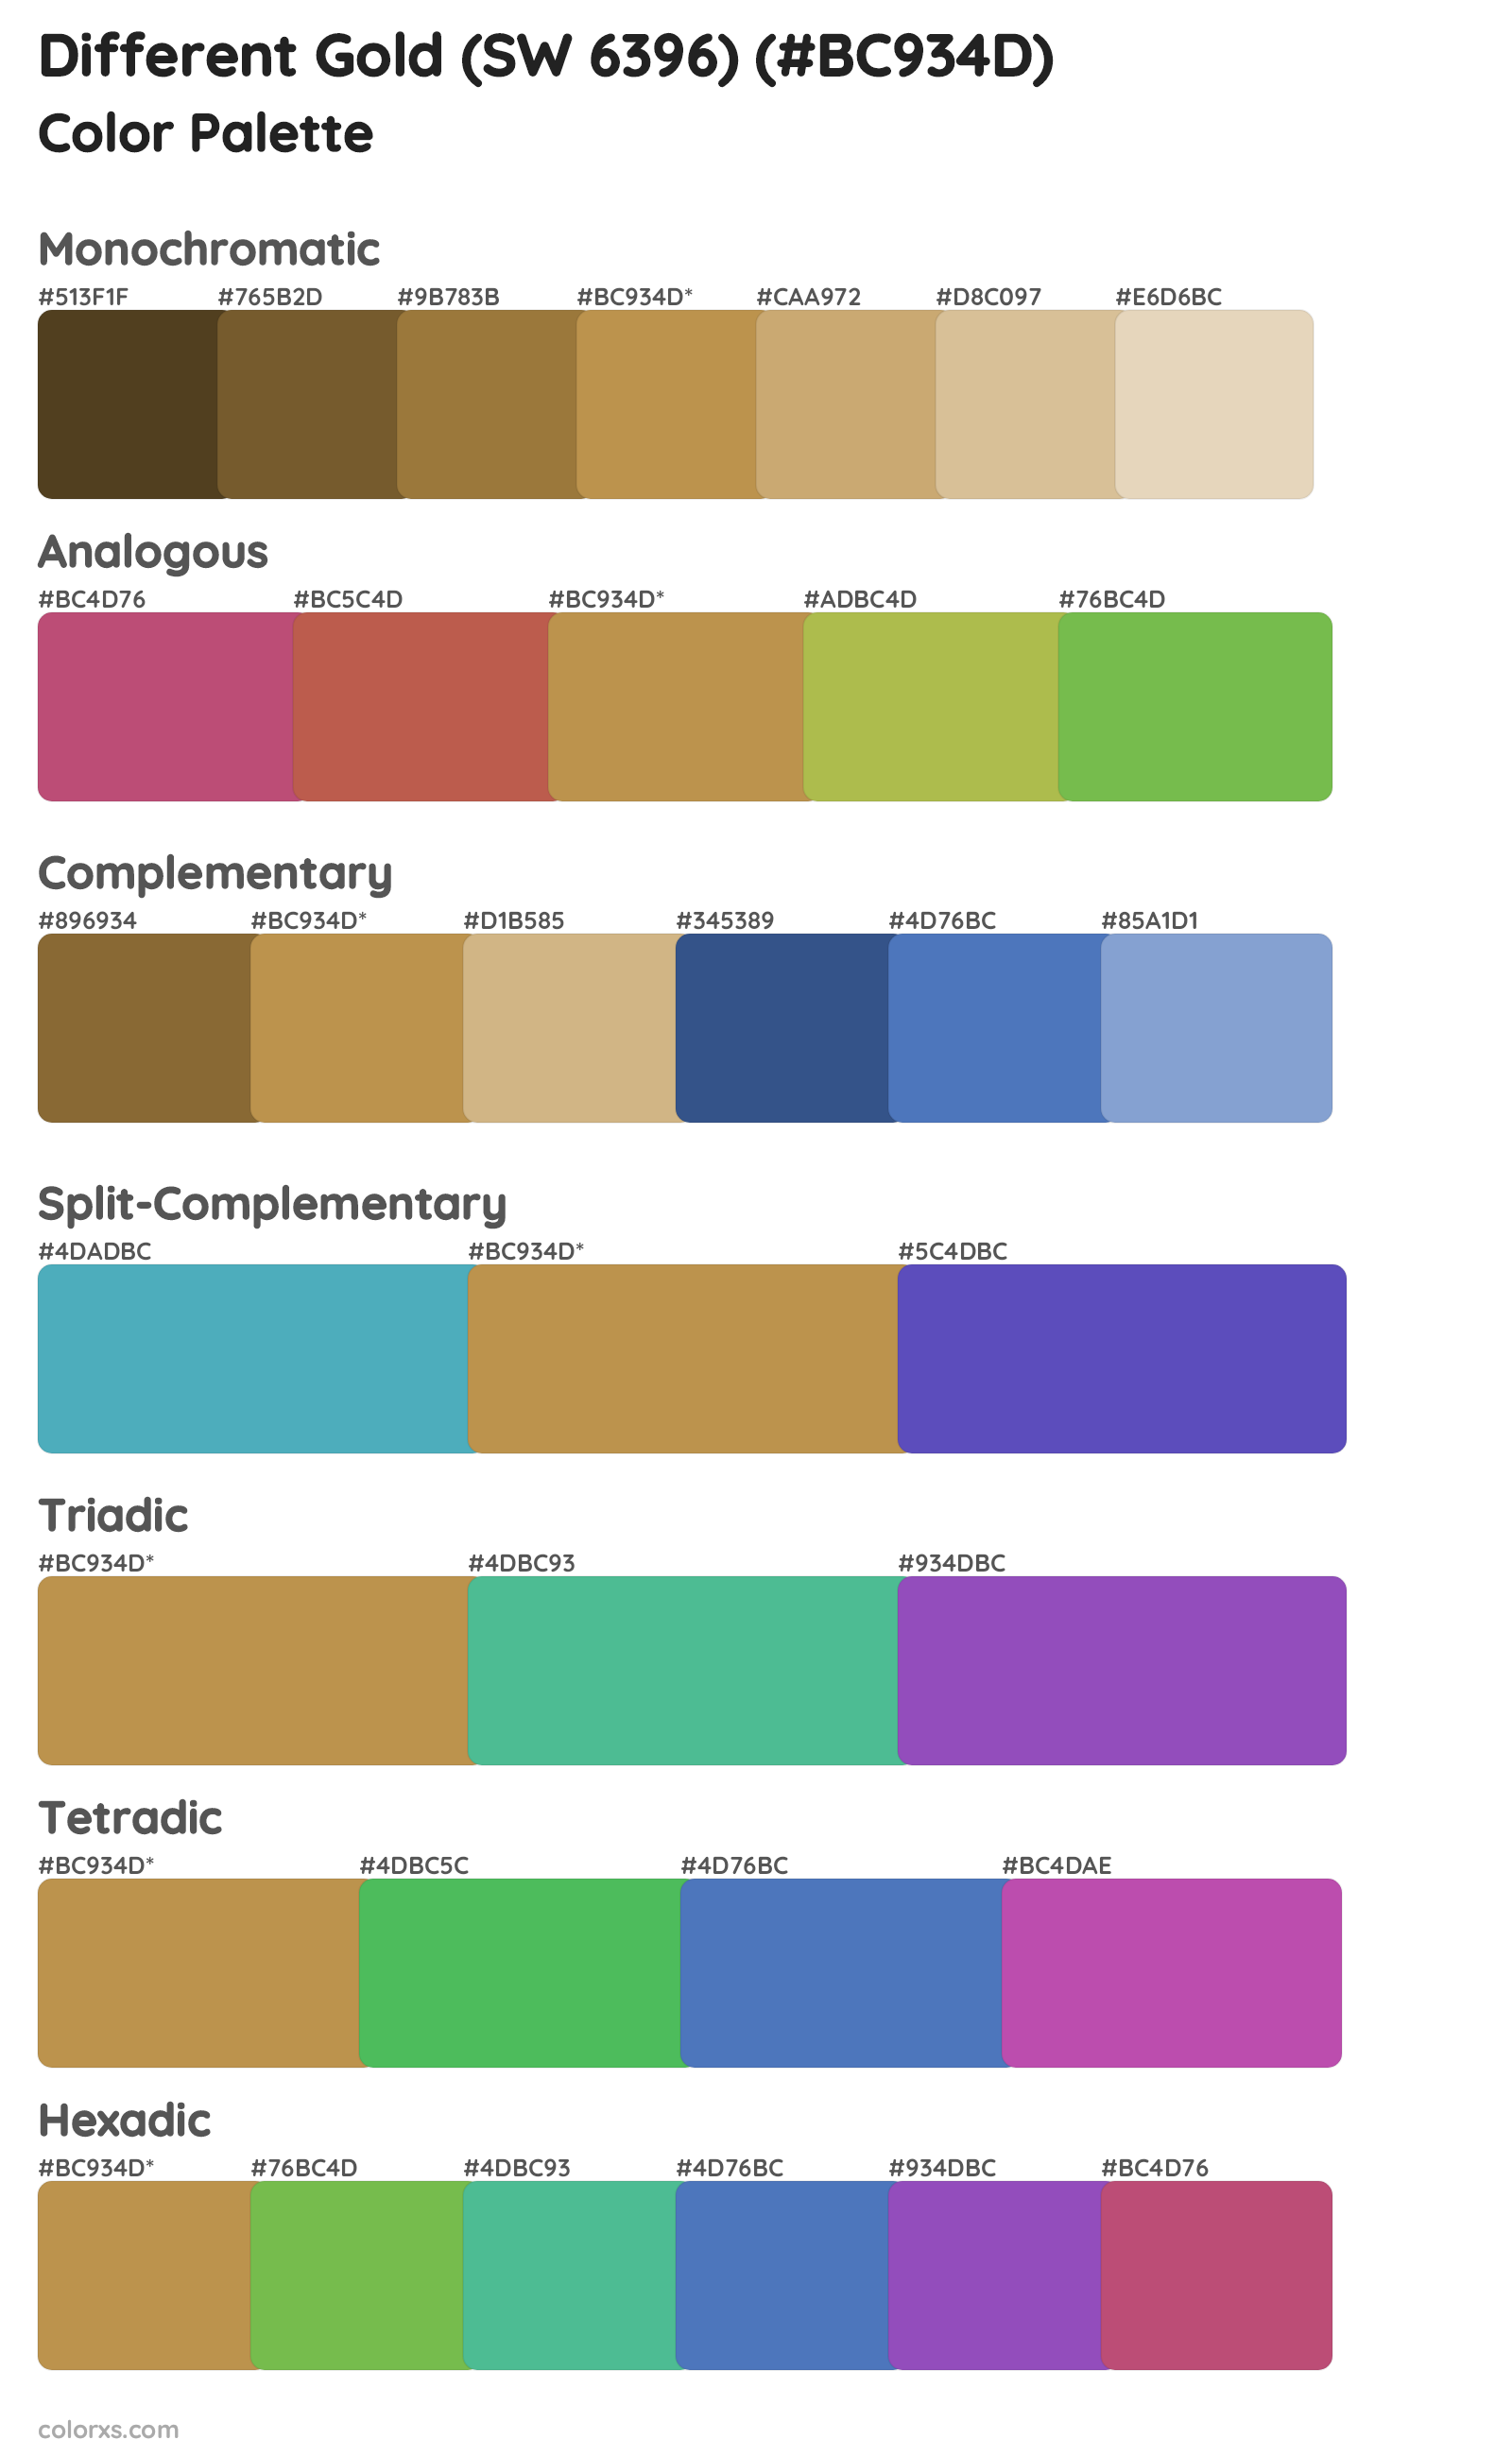 Different Gold (SW 6396) Color Scheme Palettes